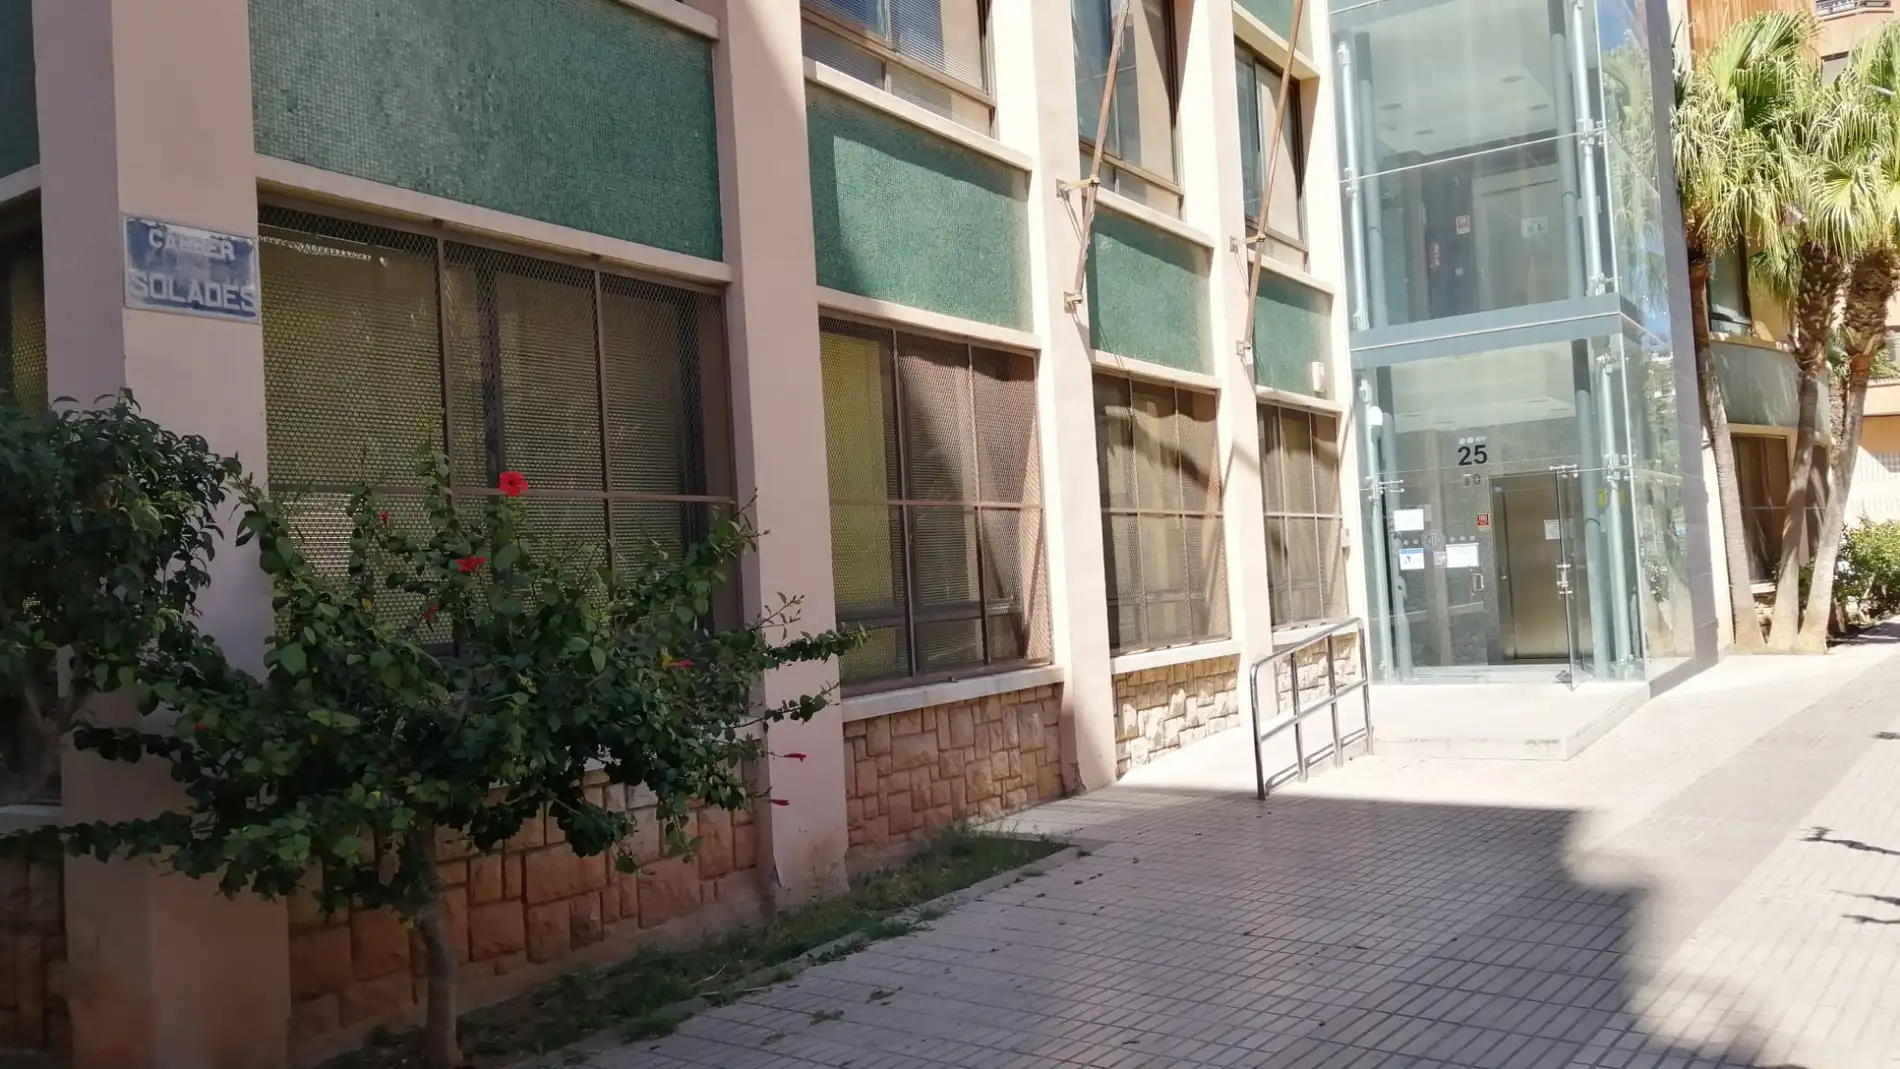 Biblioteca de Solades, donde se ubicará el cuarto Centro de Salud de Vila-real. 